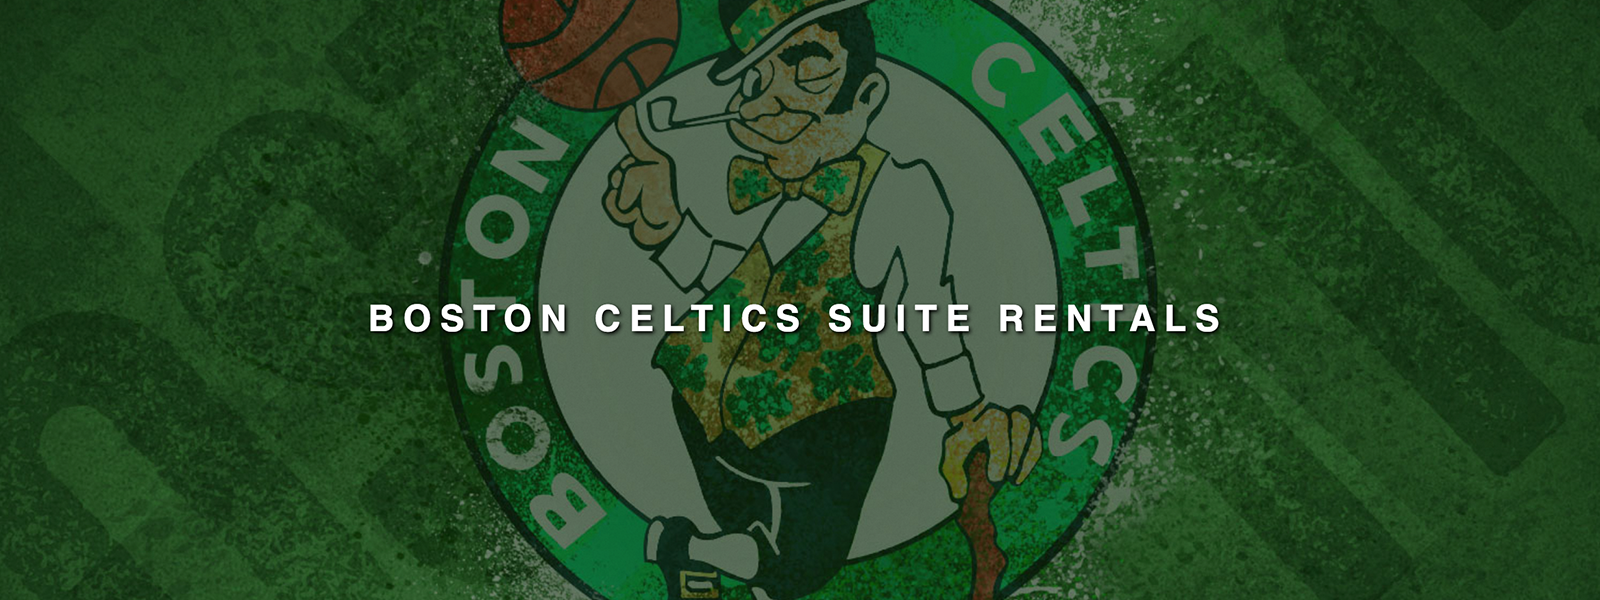 Boston Celtics Game Ticket Gift Voucher